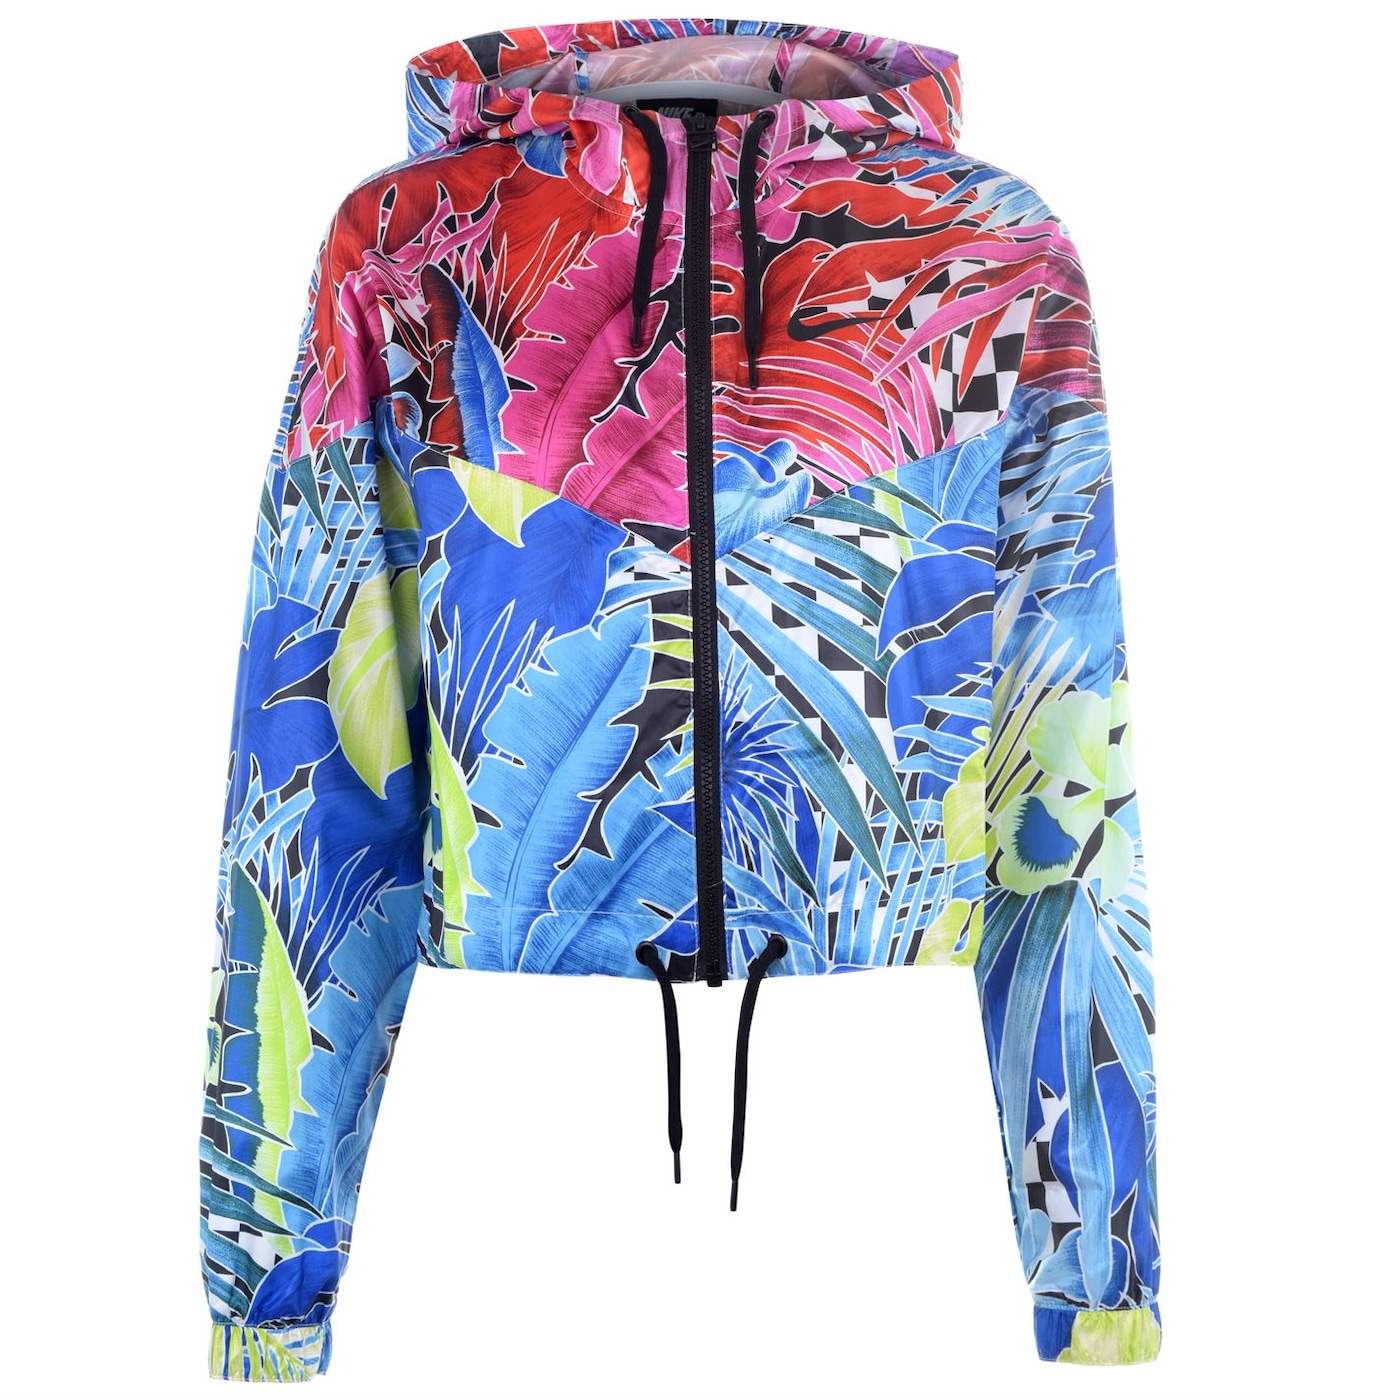 Жени  Дамско облекло  Якета & Палта  Леки спортни якета Nike Womens Tropical Print Jacket 988564-6080782